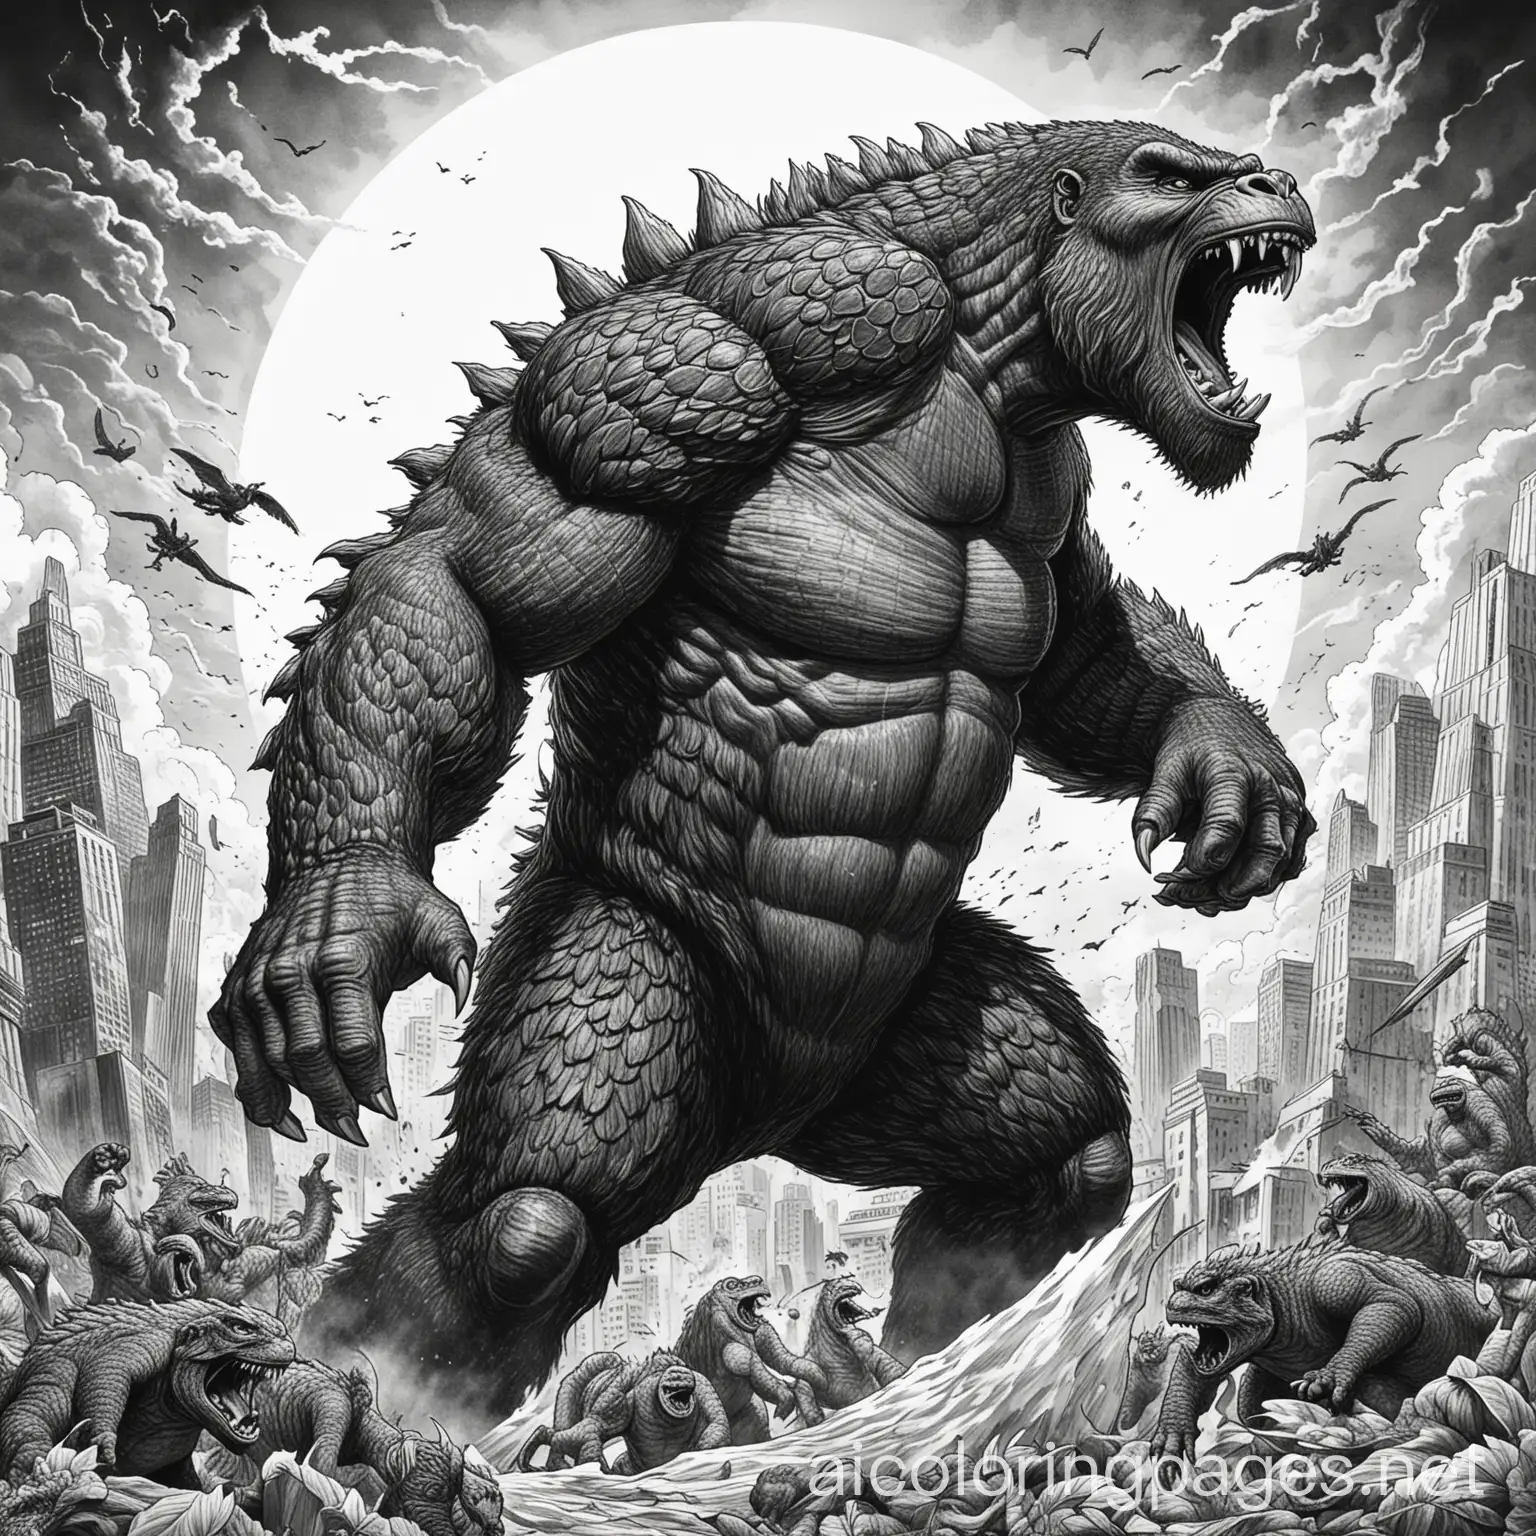 Epic-Clash-King-Kong-vs-Godzilla-Coloring-Page